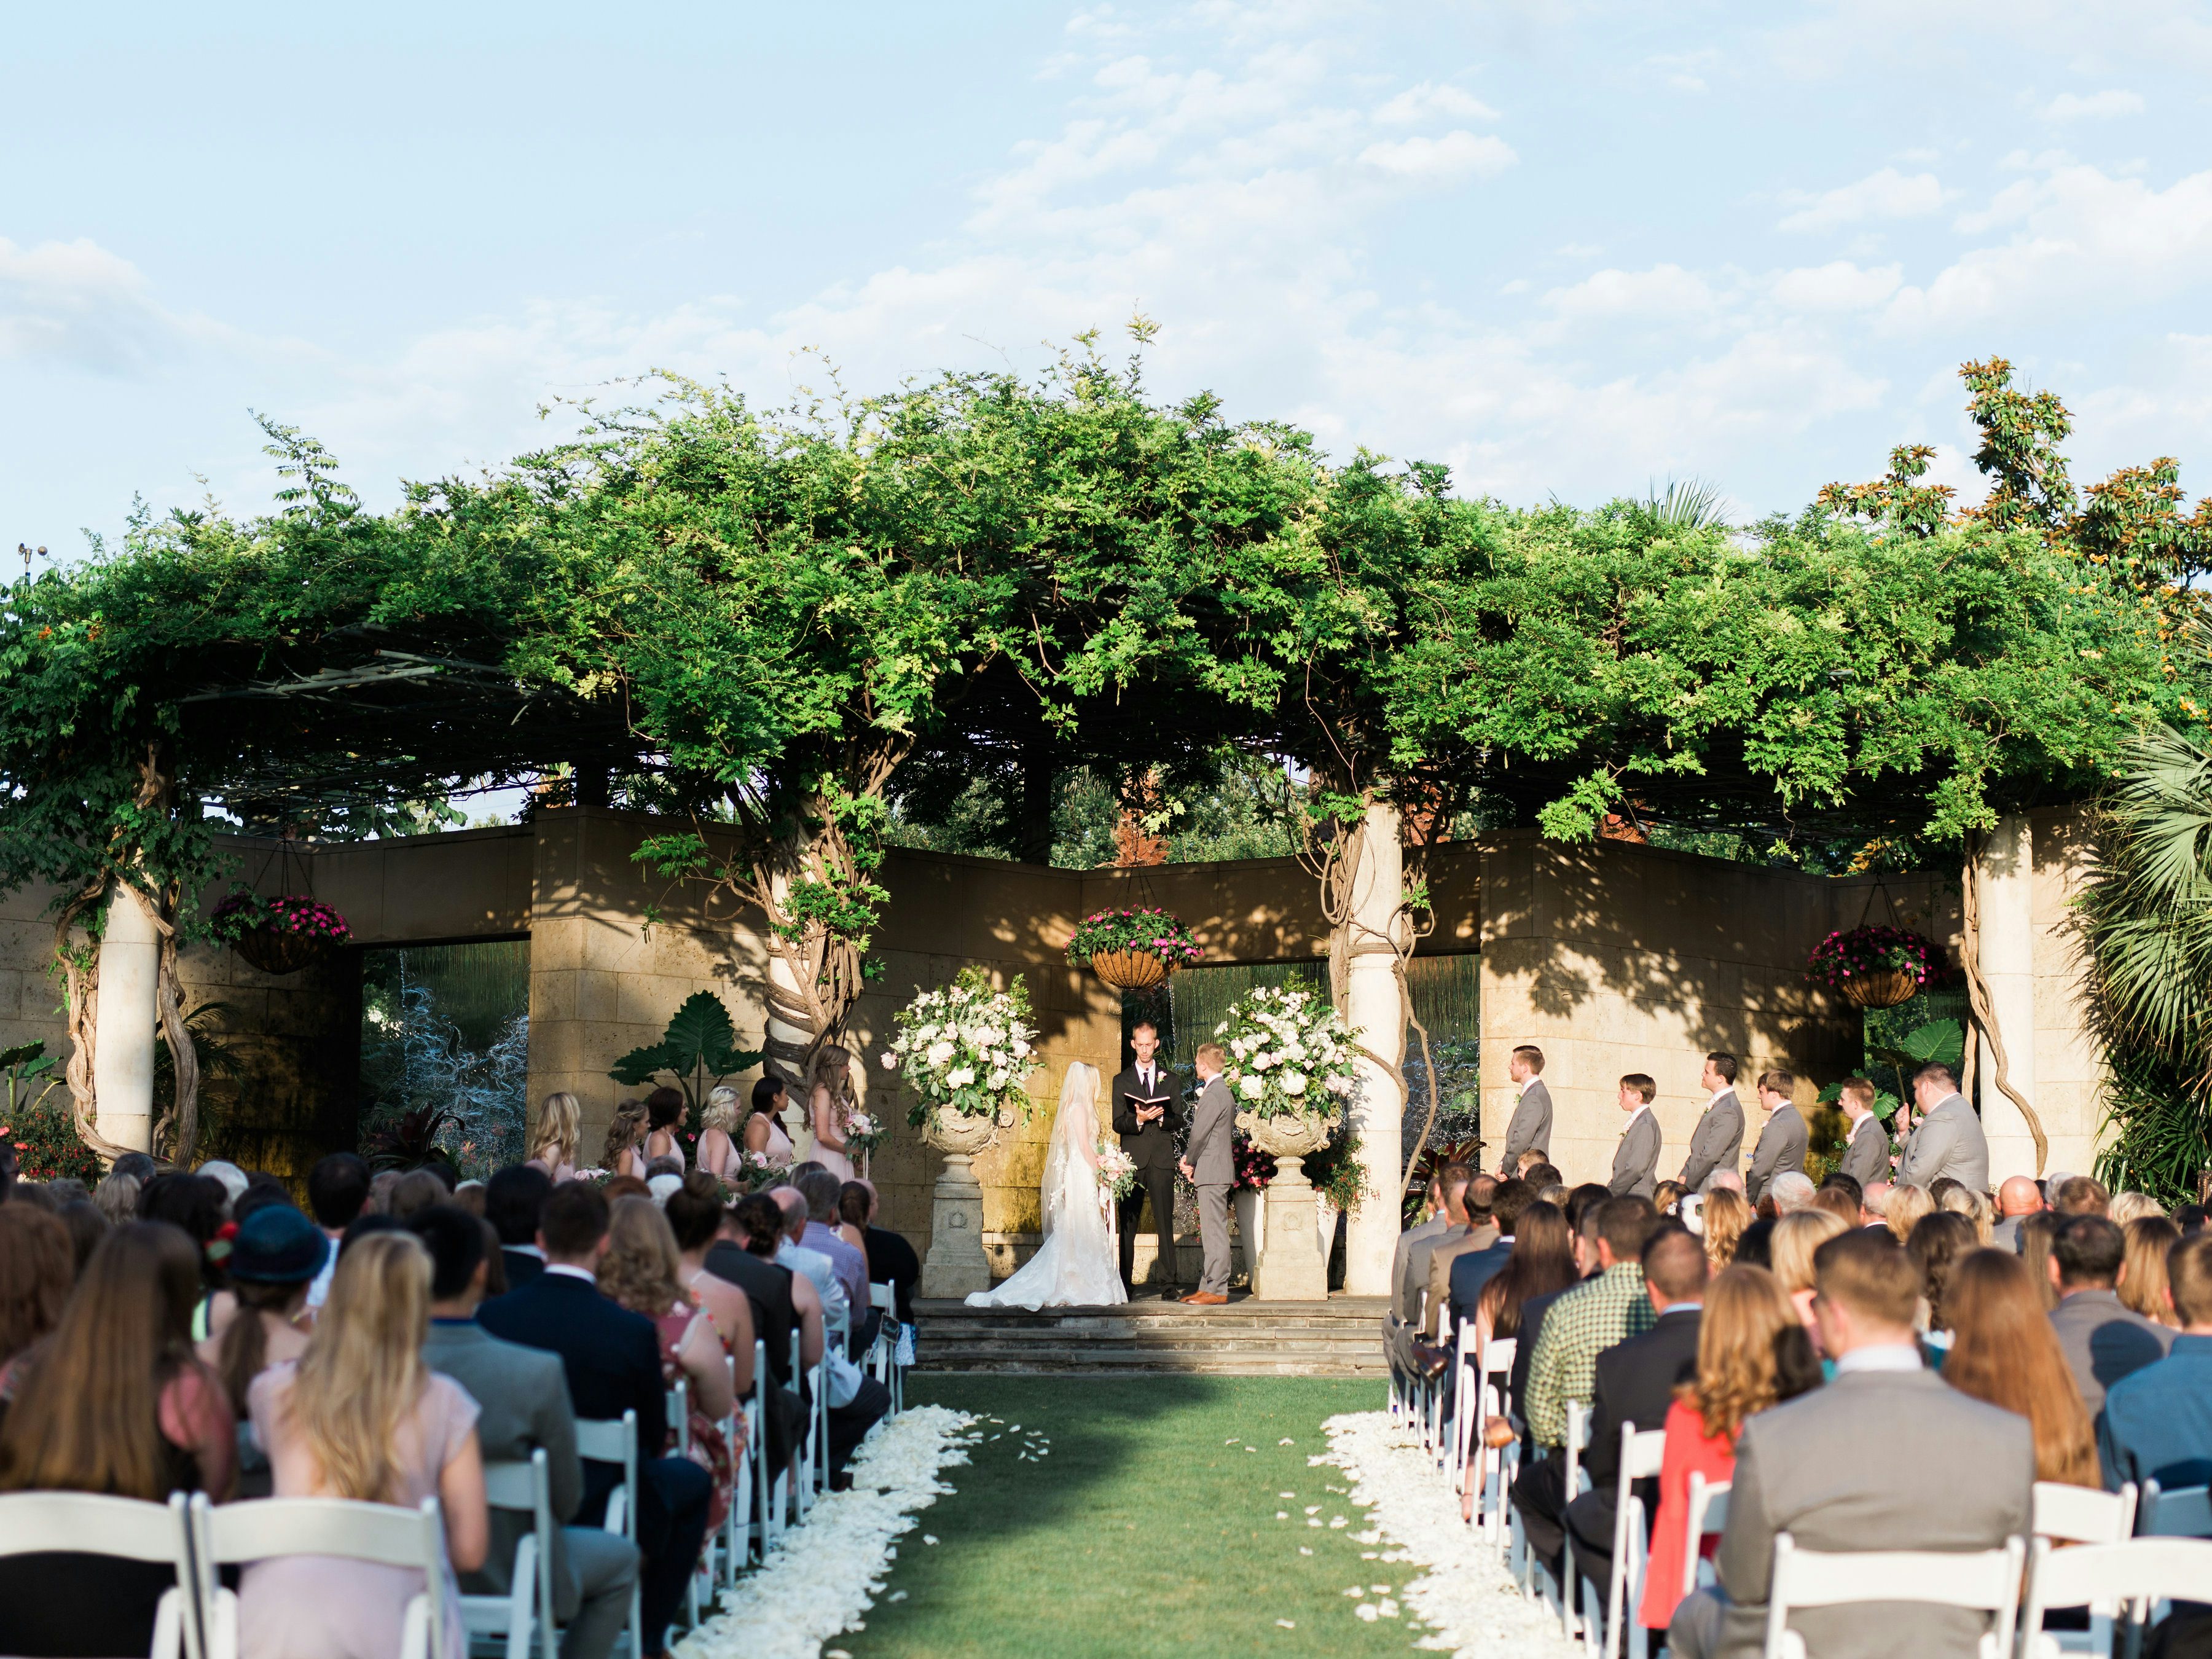  Weddings  at The Arboretum Dallas  Wedding  Venues  Garden  